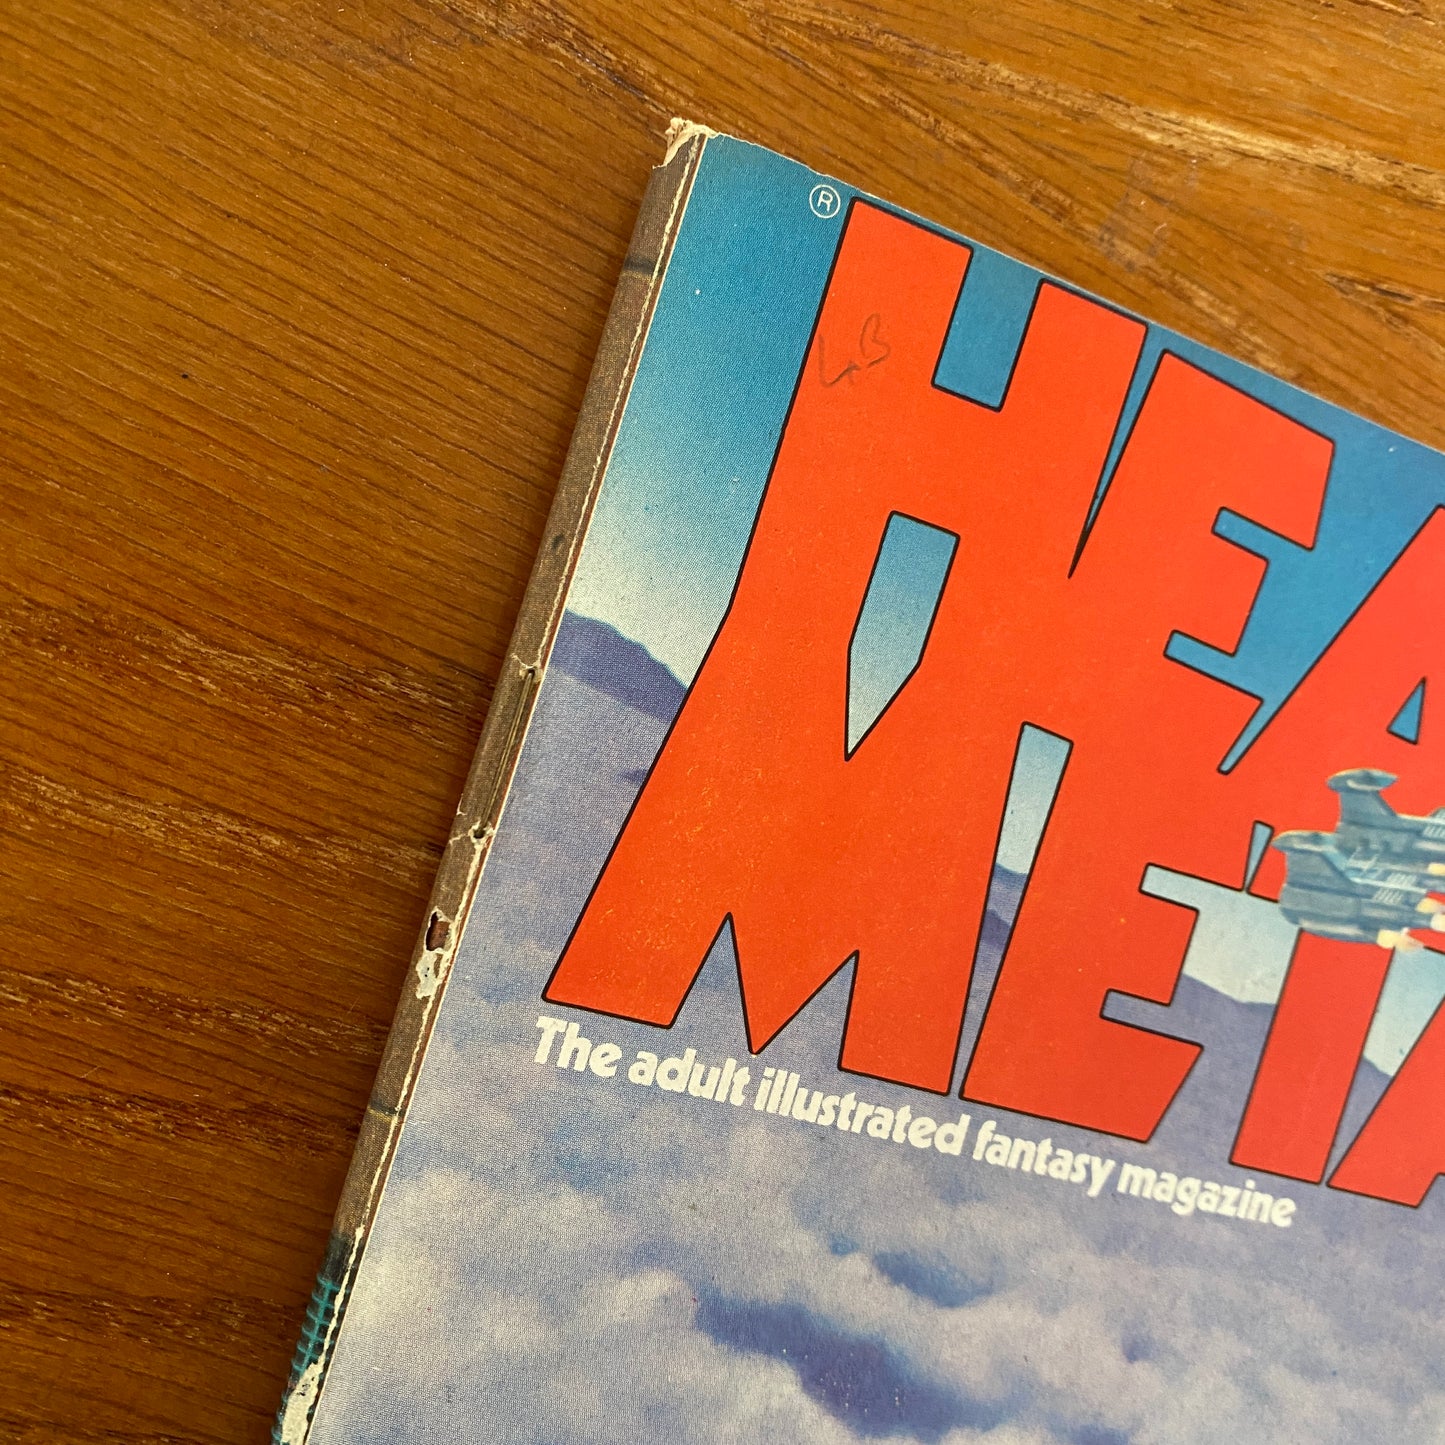 V3.8 Heavy Metal - Dec 1979